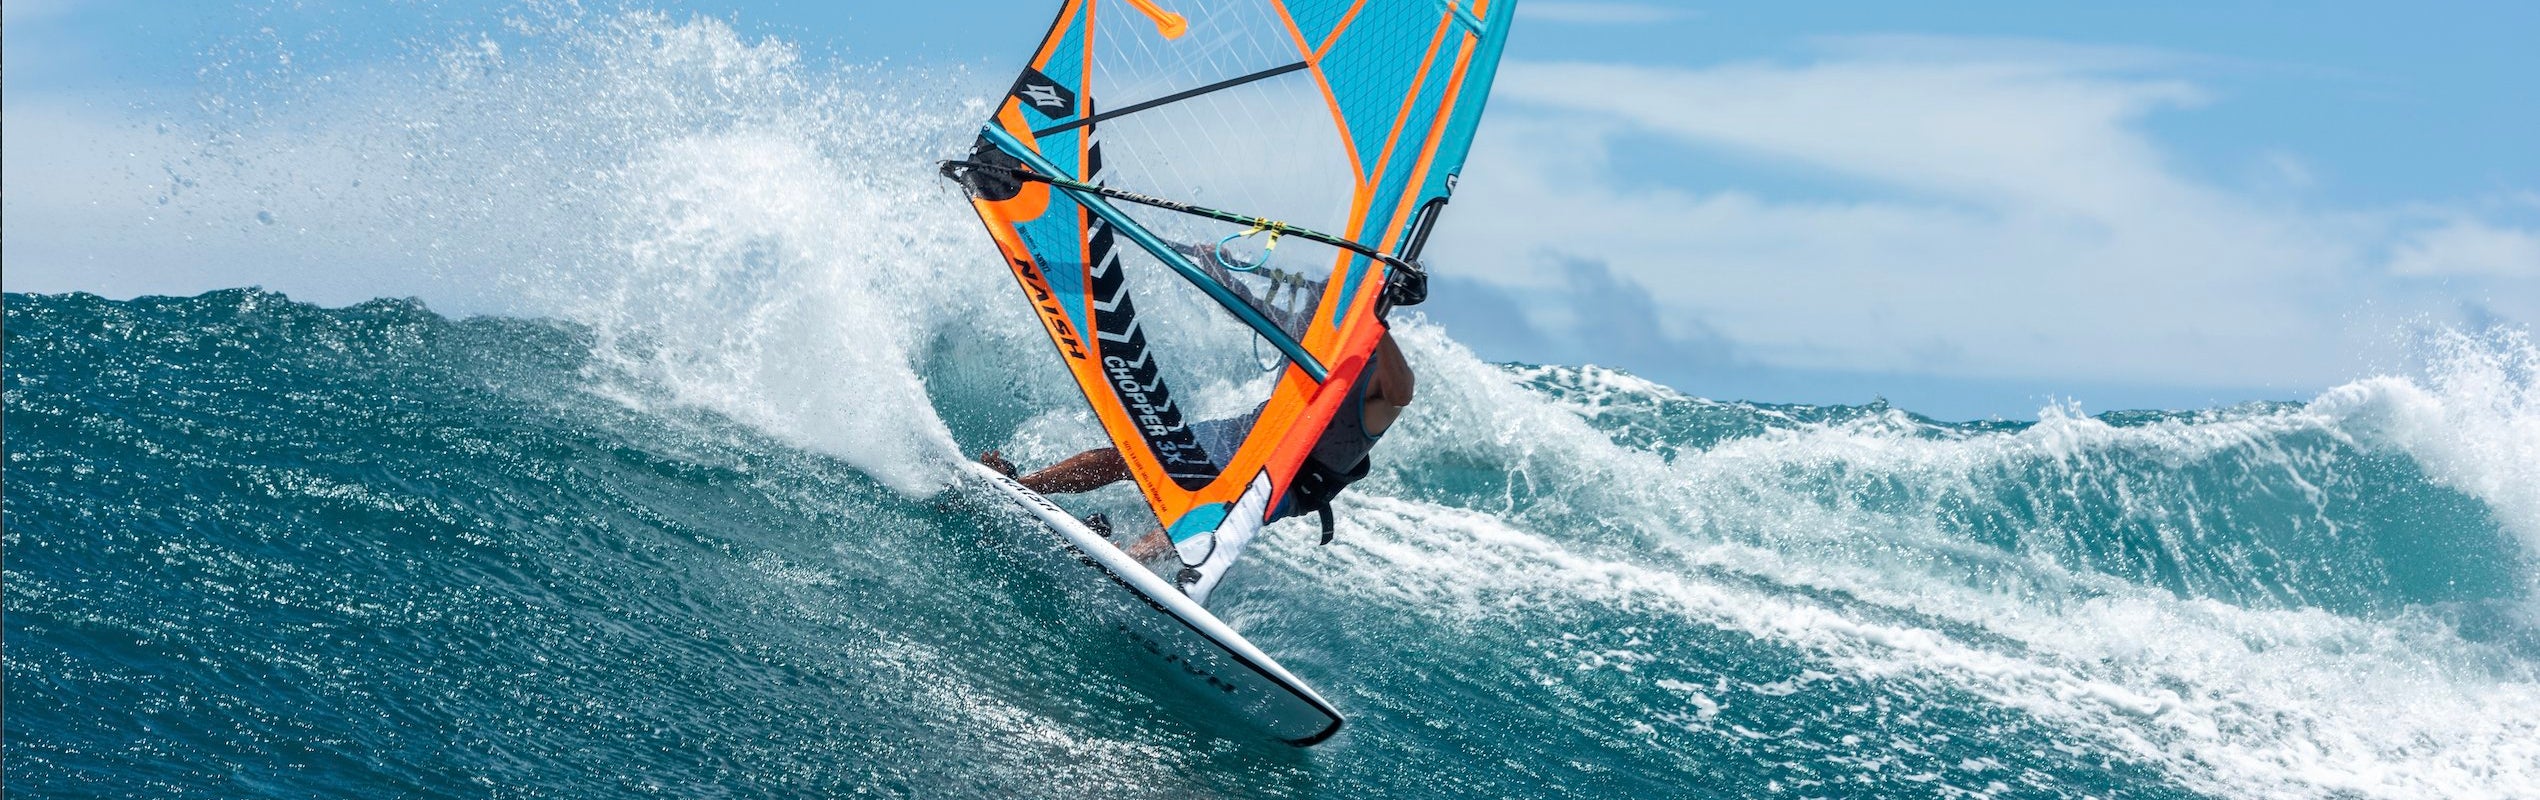 Windsurf Boards - Naish.com